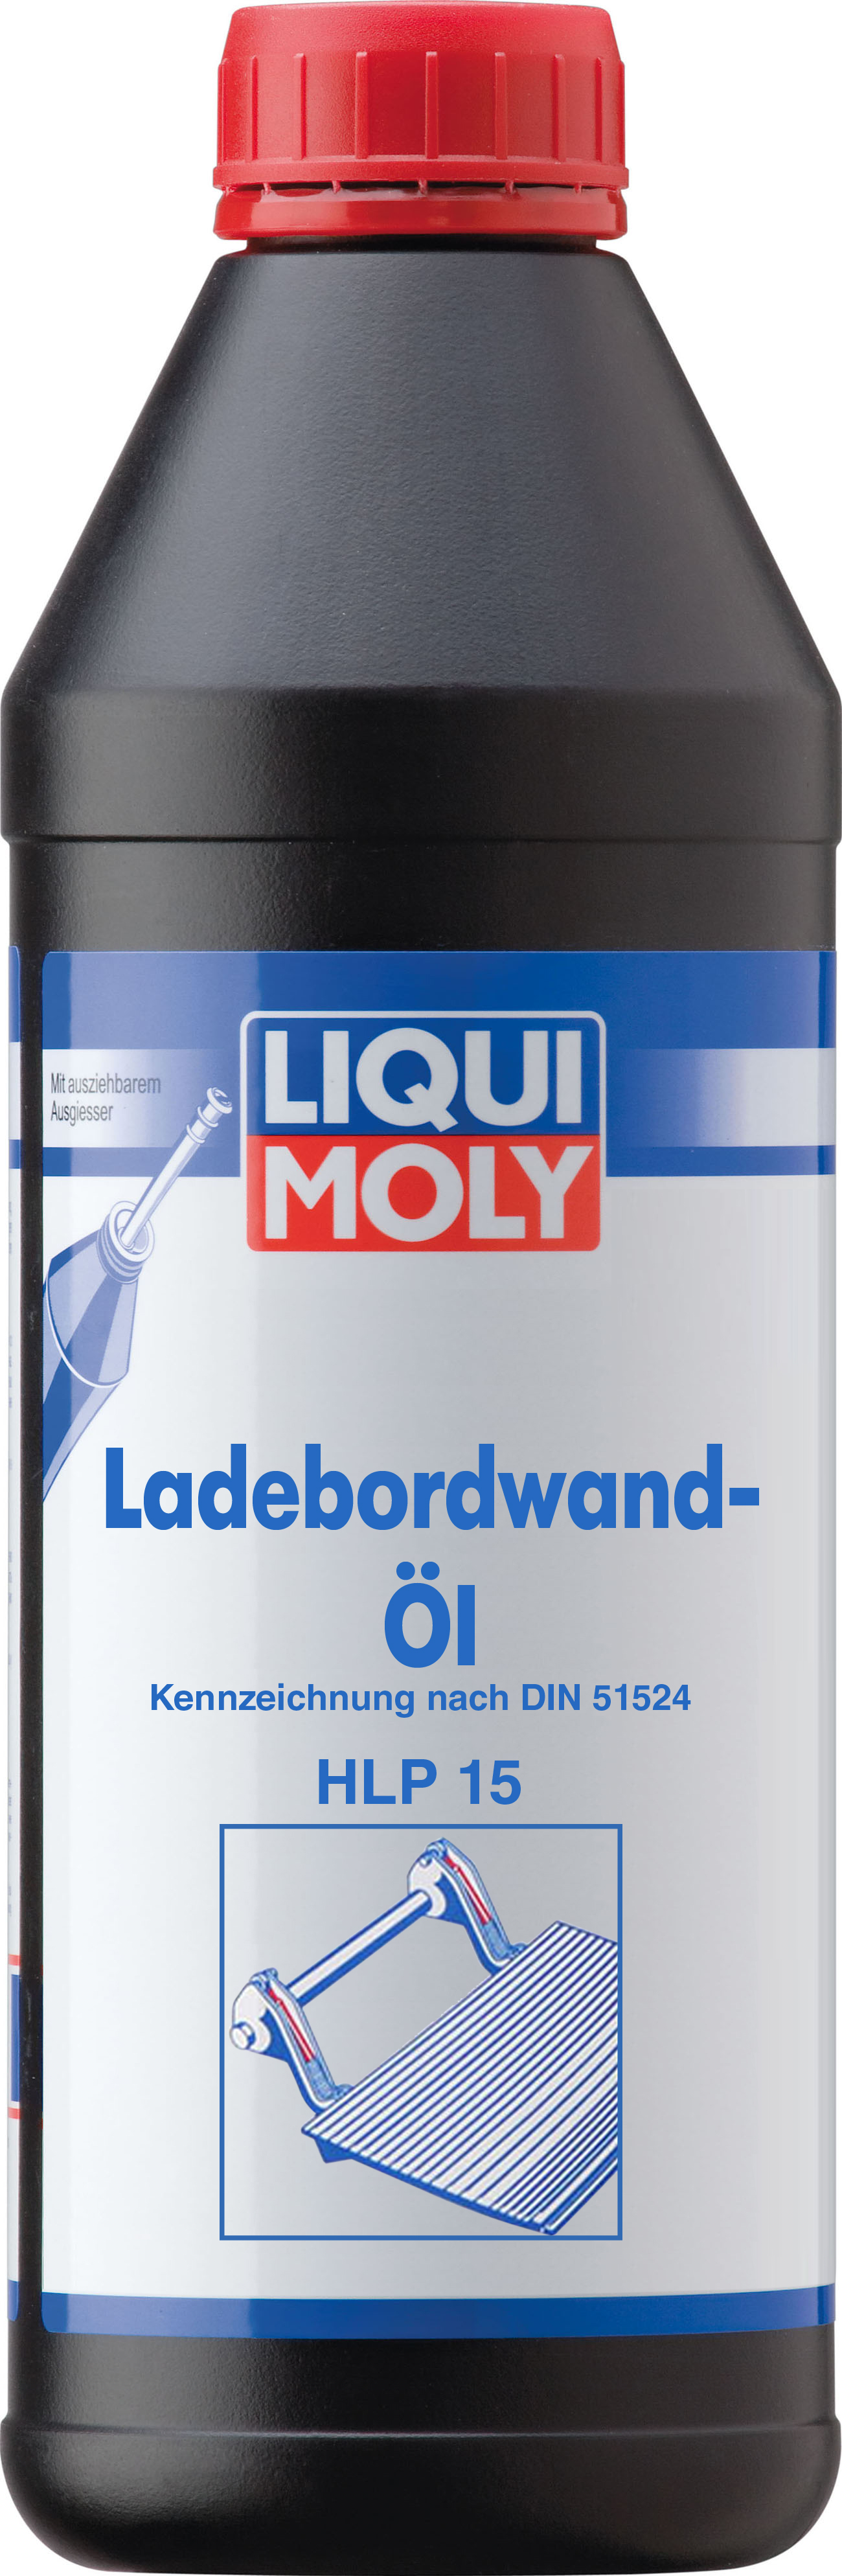 Купить запчасть LIQUI MOLY - 1097 Гидравлическое масло для Гидробортов Ladebordwand-Oil